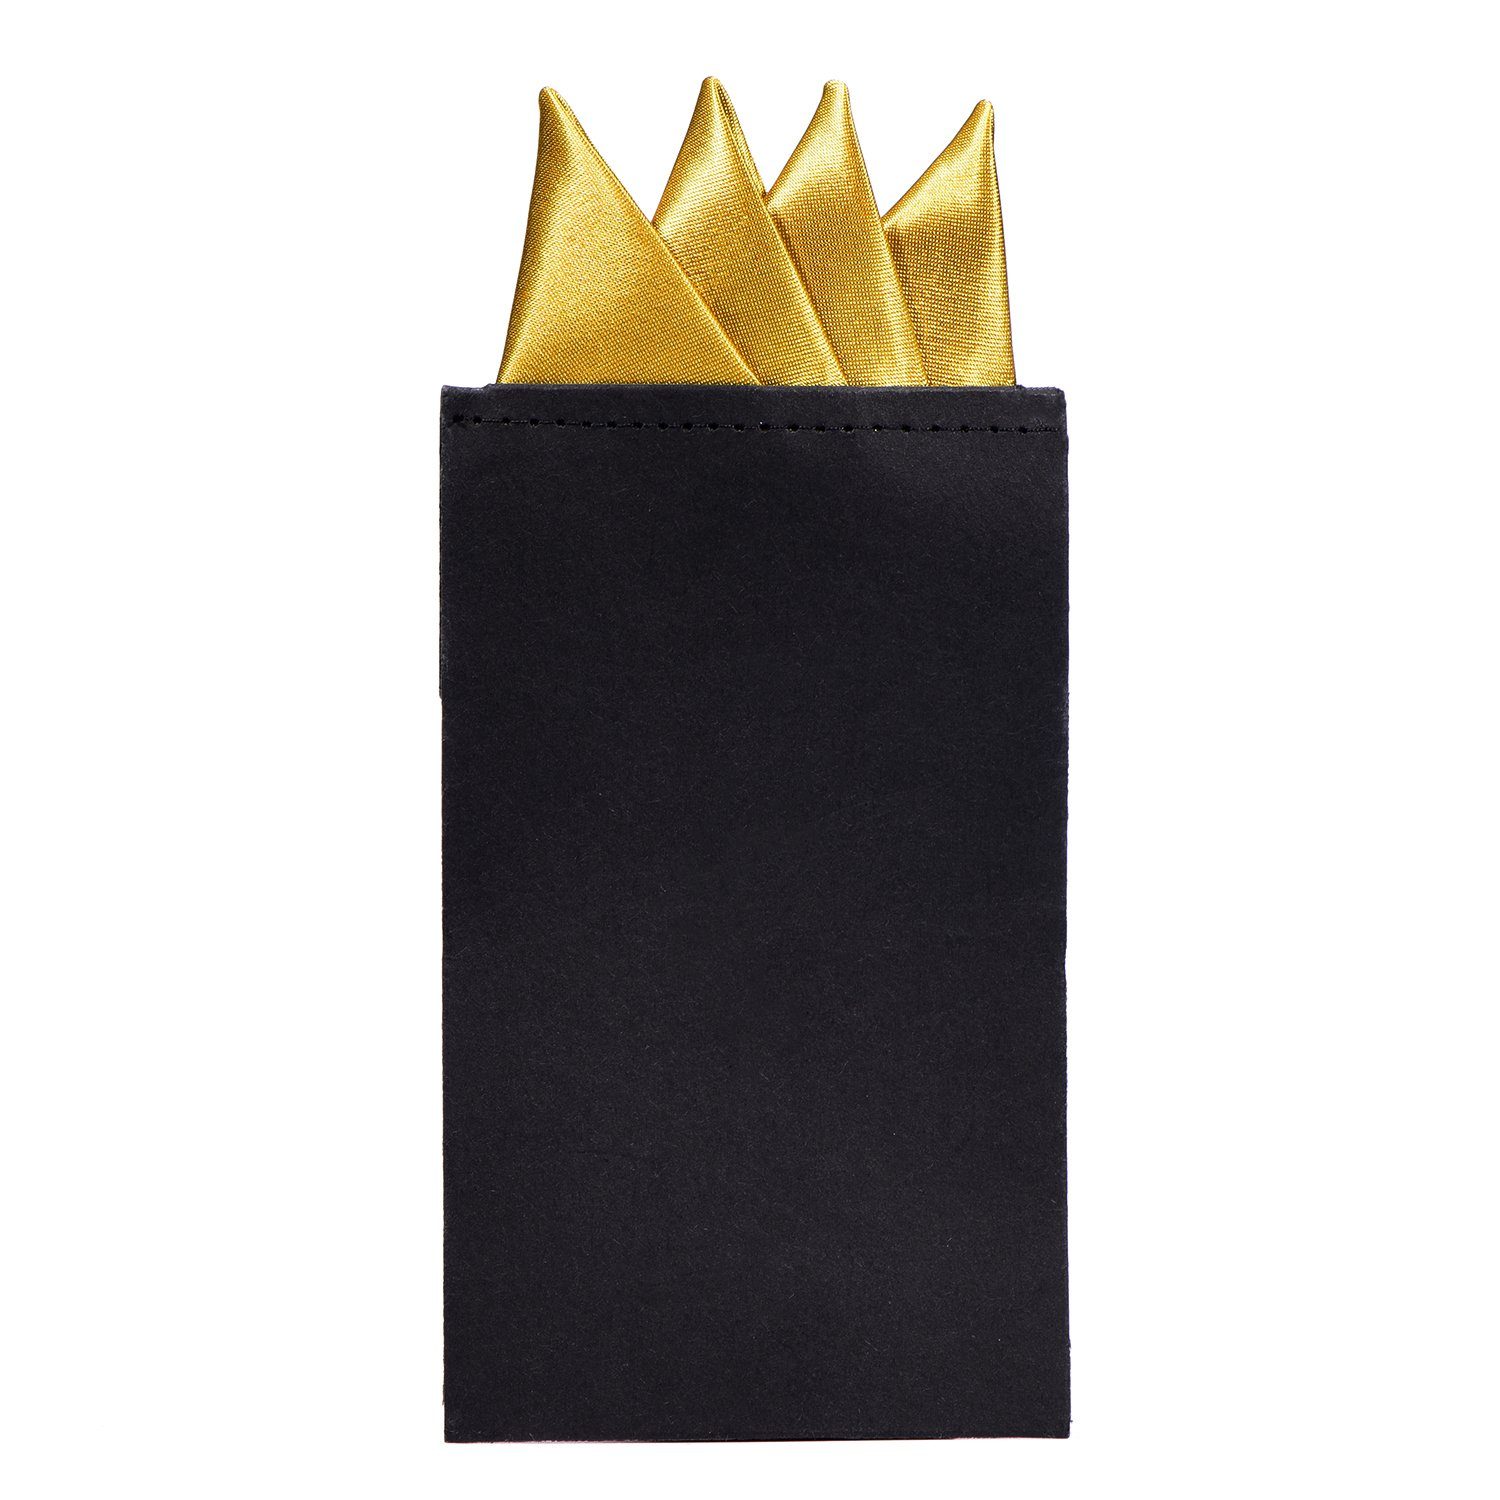 verstärkt, vorgefaltet, 1-St), vorgefaltet perfekten DonDon gold DonDon den für Karton Einstecktuch Herren Einstecktuch Seidenlook mit (Packung, Sitz,